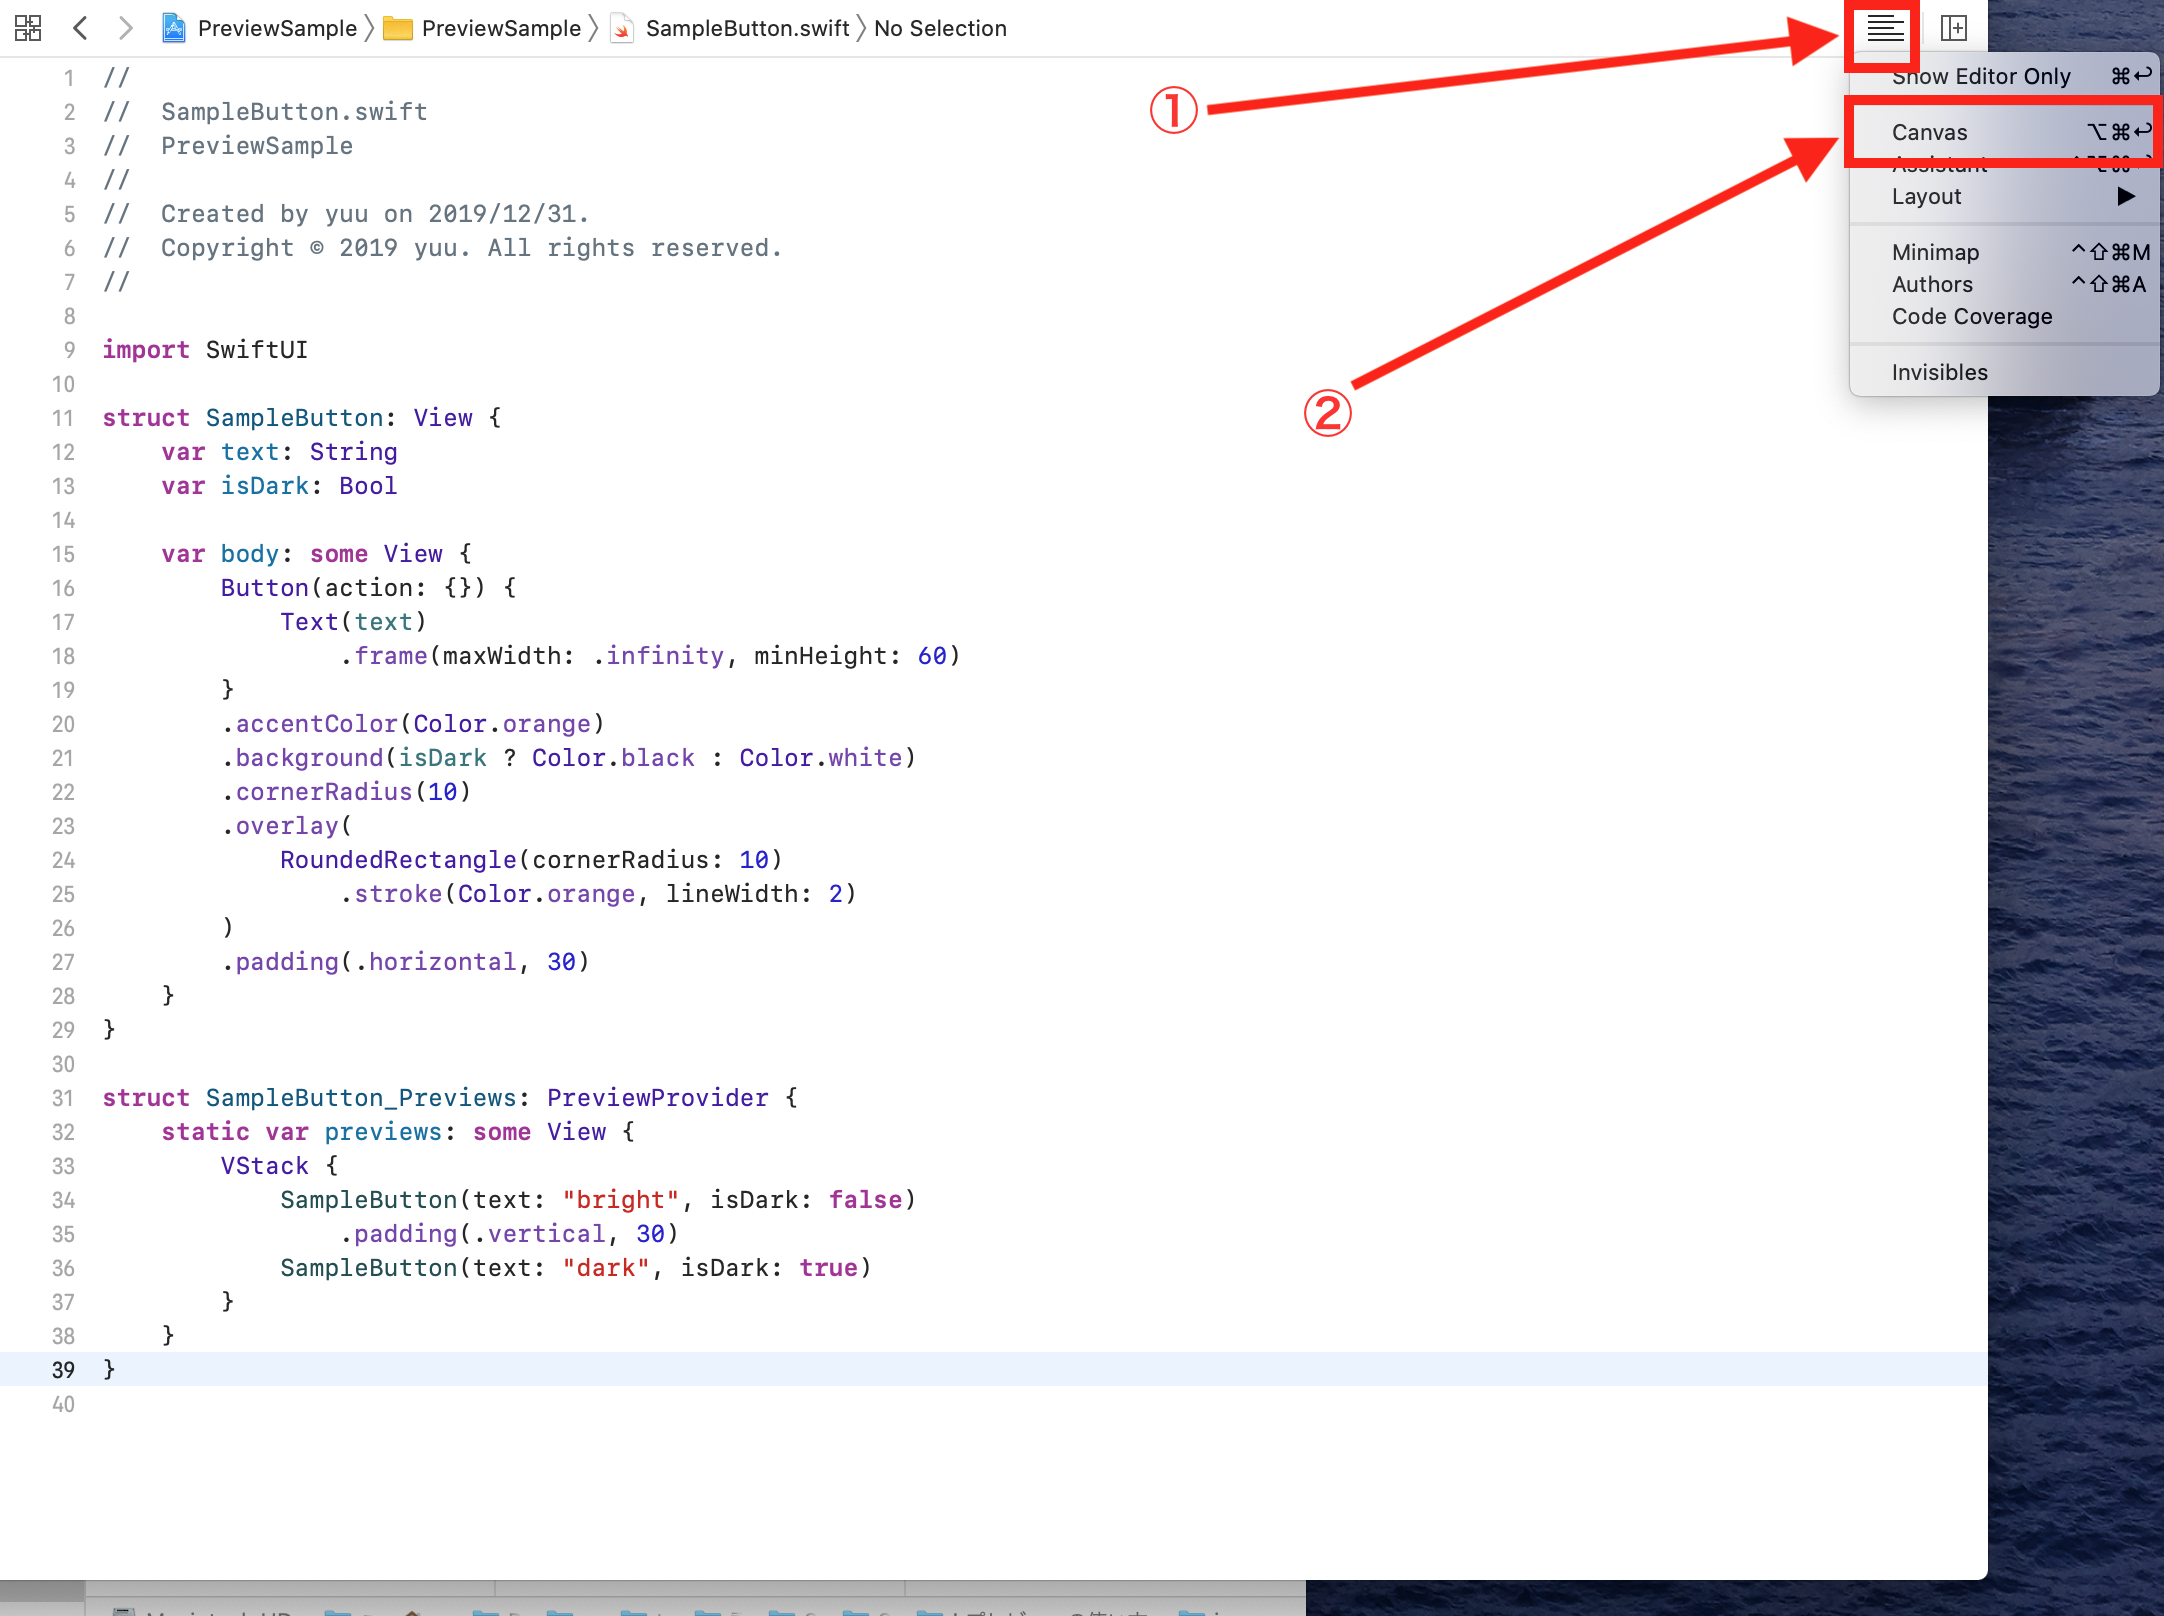 Xcodeのコードエディタ画面右上のメニューからCanvasを選択する